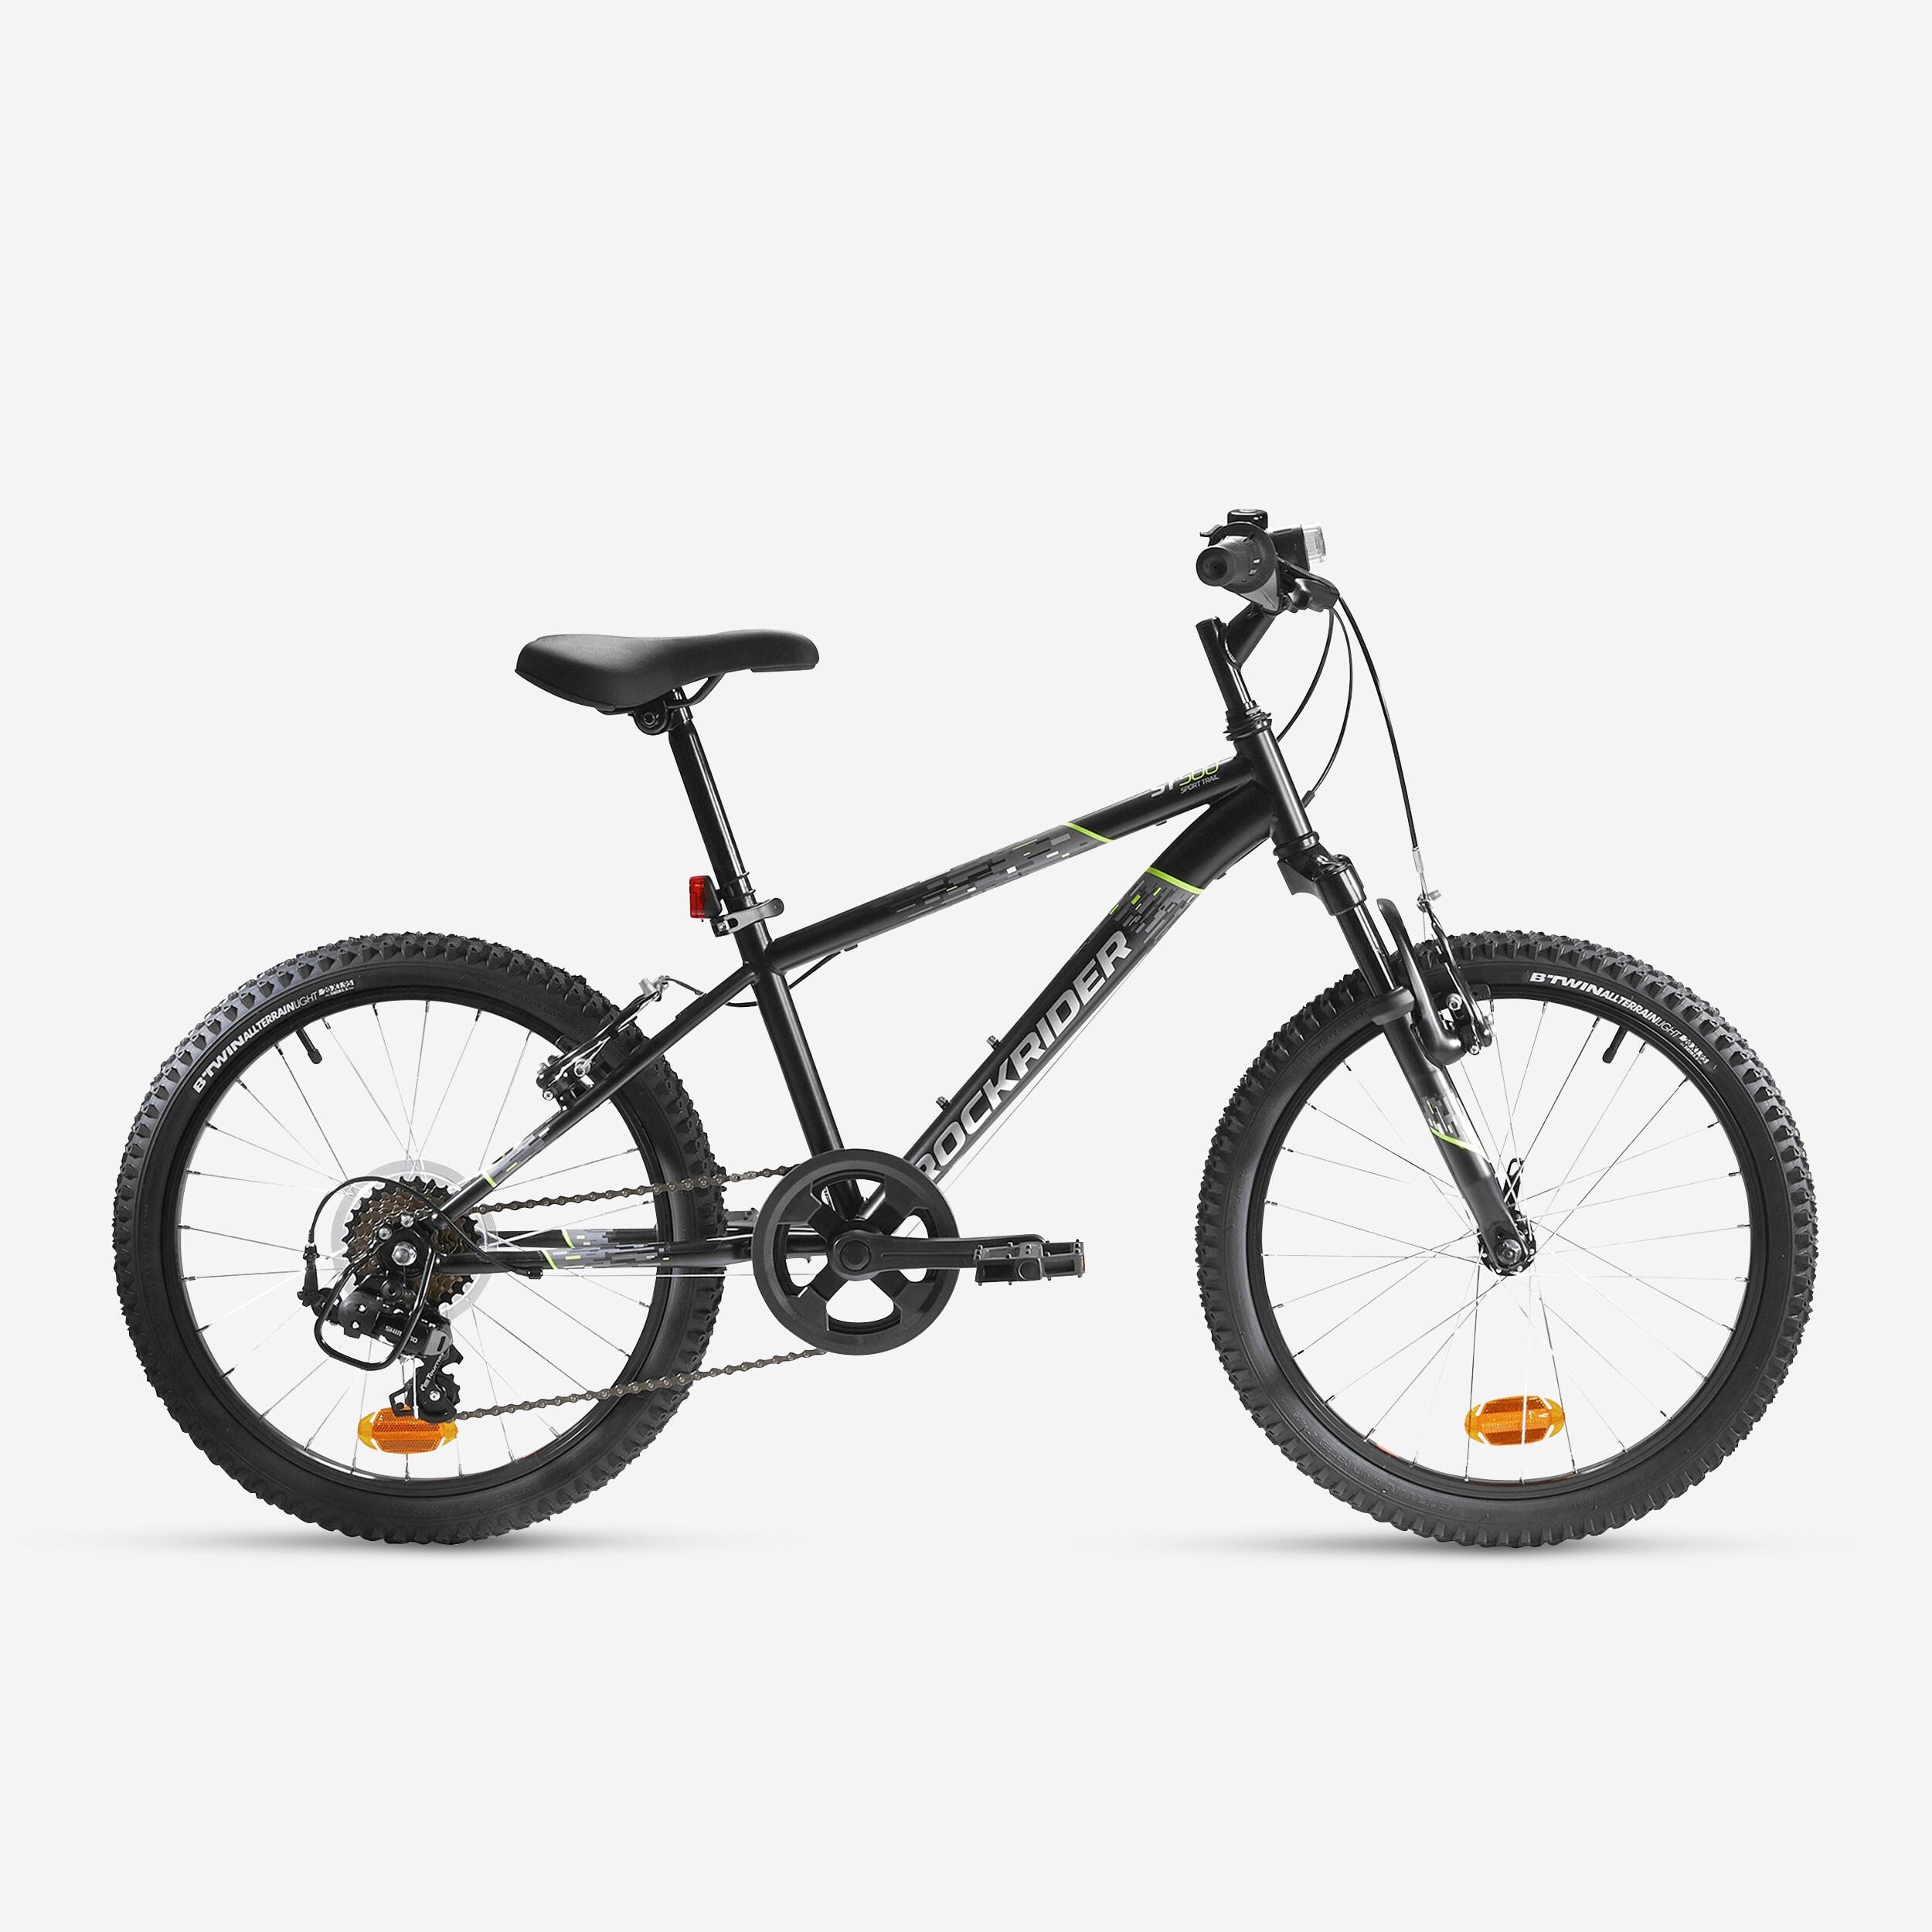 ROCKRIDER Kids' 20-inch, 6-speed, suspension fork mountain bike, black